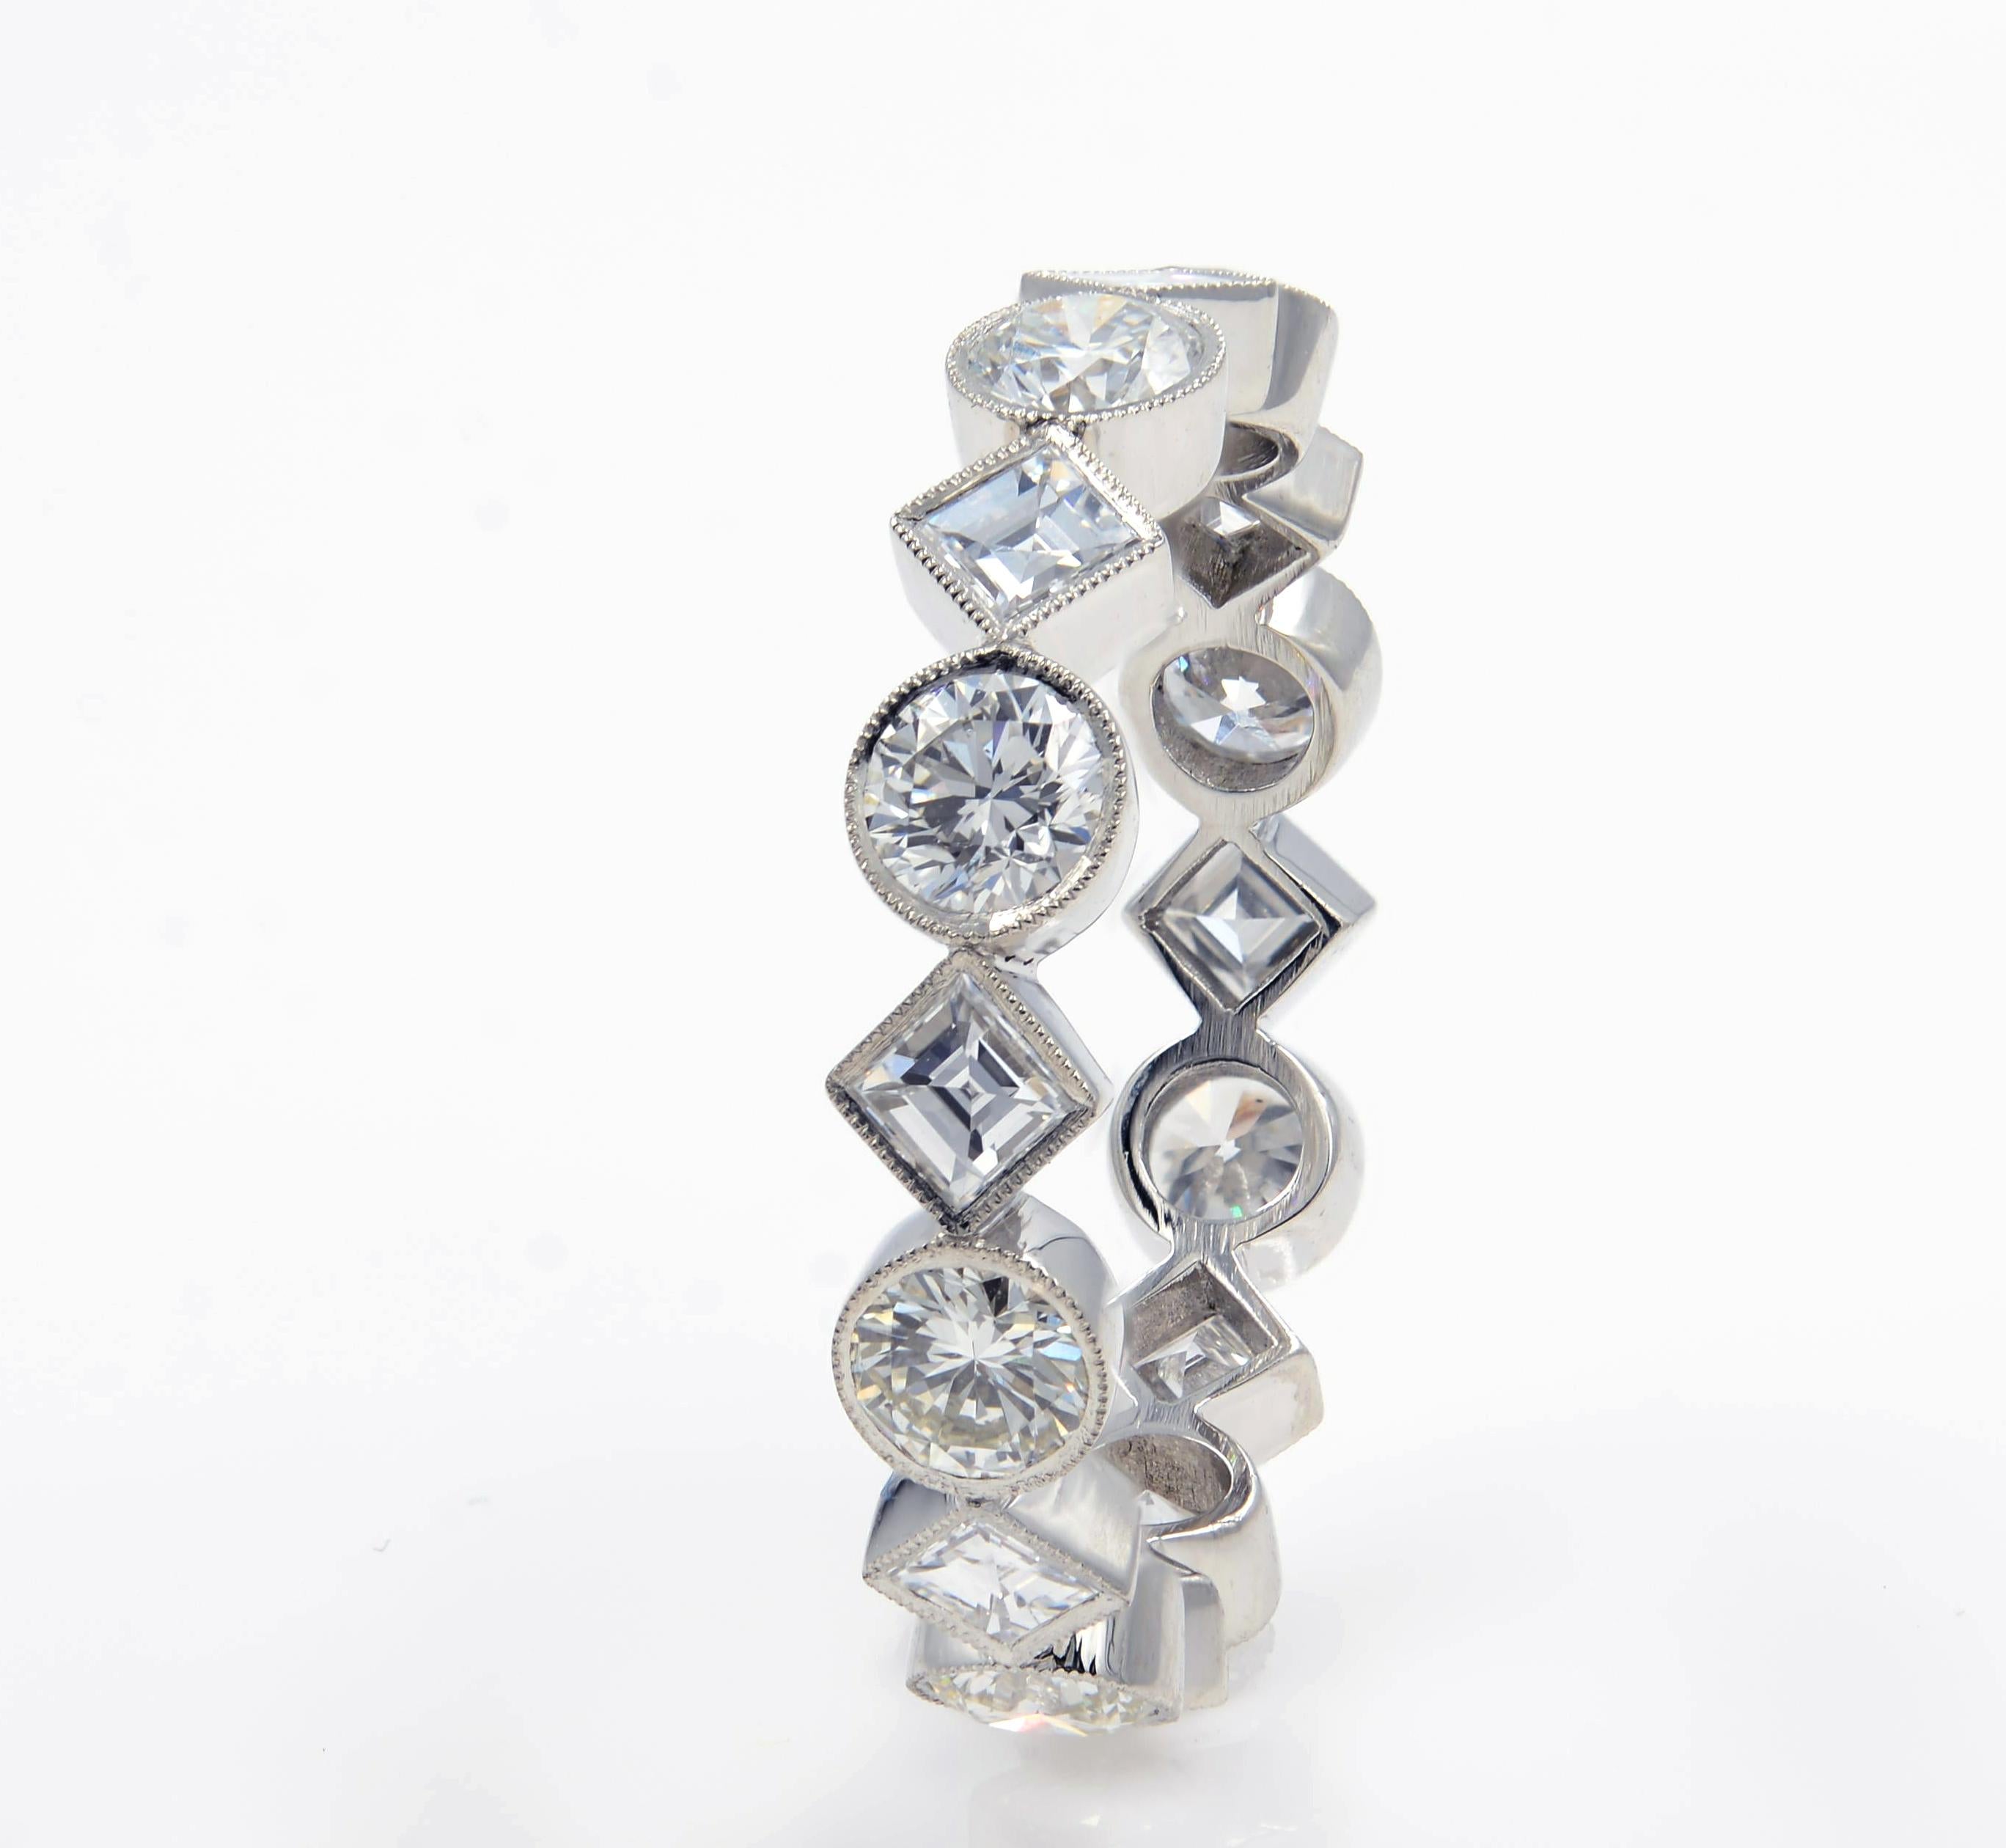 Knapp 2,00 Karat glitzernde Diamanten im Karree-Schliff und runde Diamanten sind in diesem begehrenswerten und einzigartigen schmalen Ewigkeitsring gefasst. Die Diamanten sind in eine Lünette gefasst, die mit feinen Maserungsdetails und einer